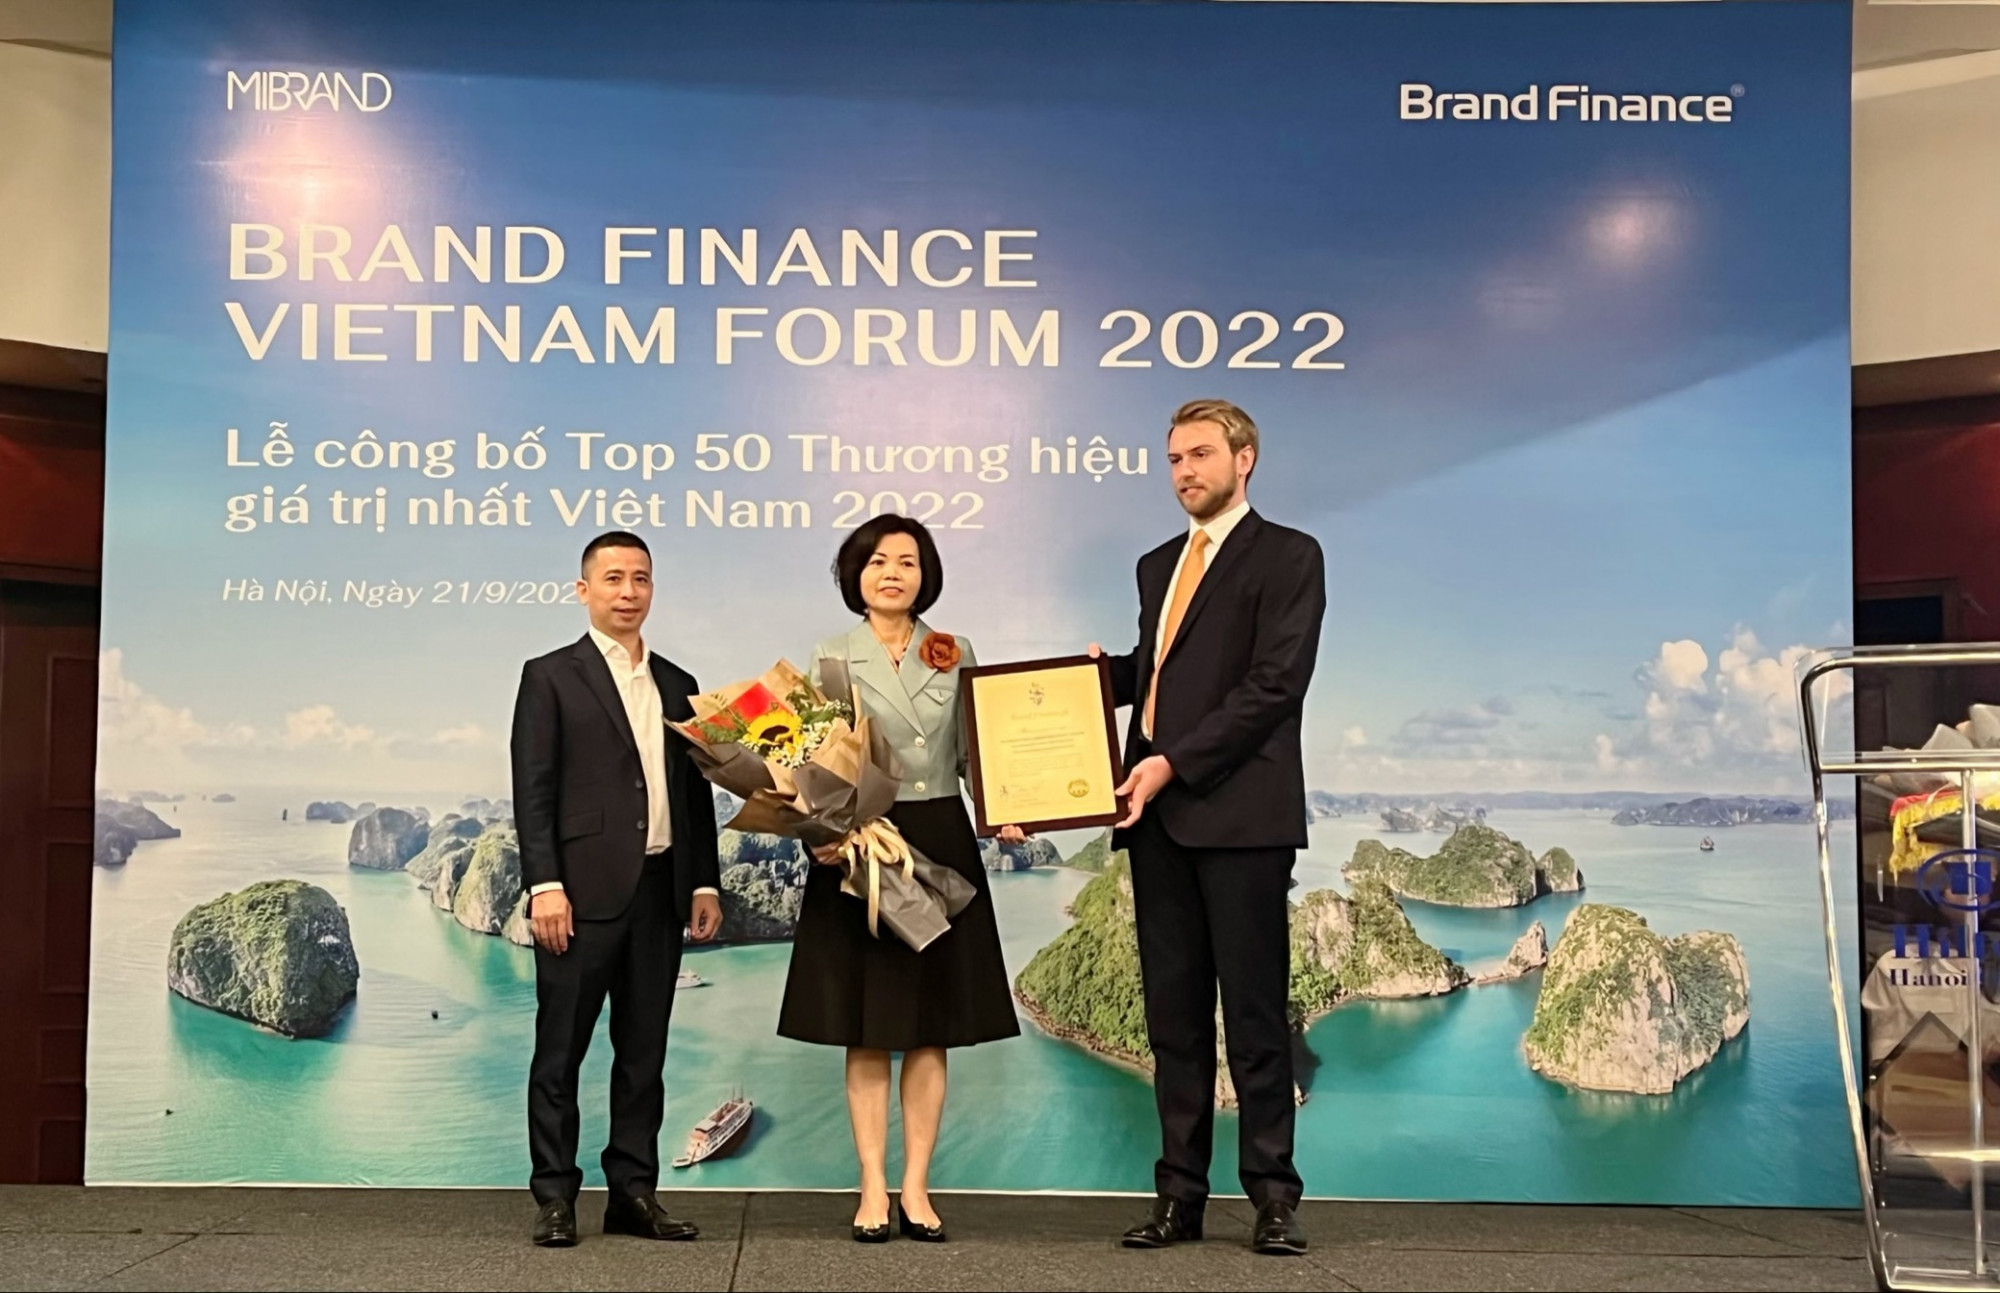 Đại diện Brand Finance trao chứng nhận “Vinamilk - Thương hiệu sữa lớn thứ 6 thế giới” cho Bà Bùi Thị Hương - Giám đốc điều hành Vinamilk - Ảnh: Vinamilk